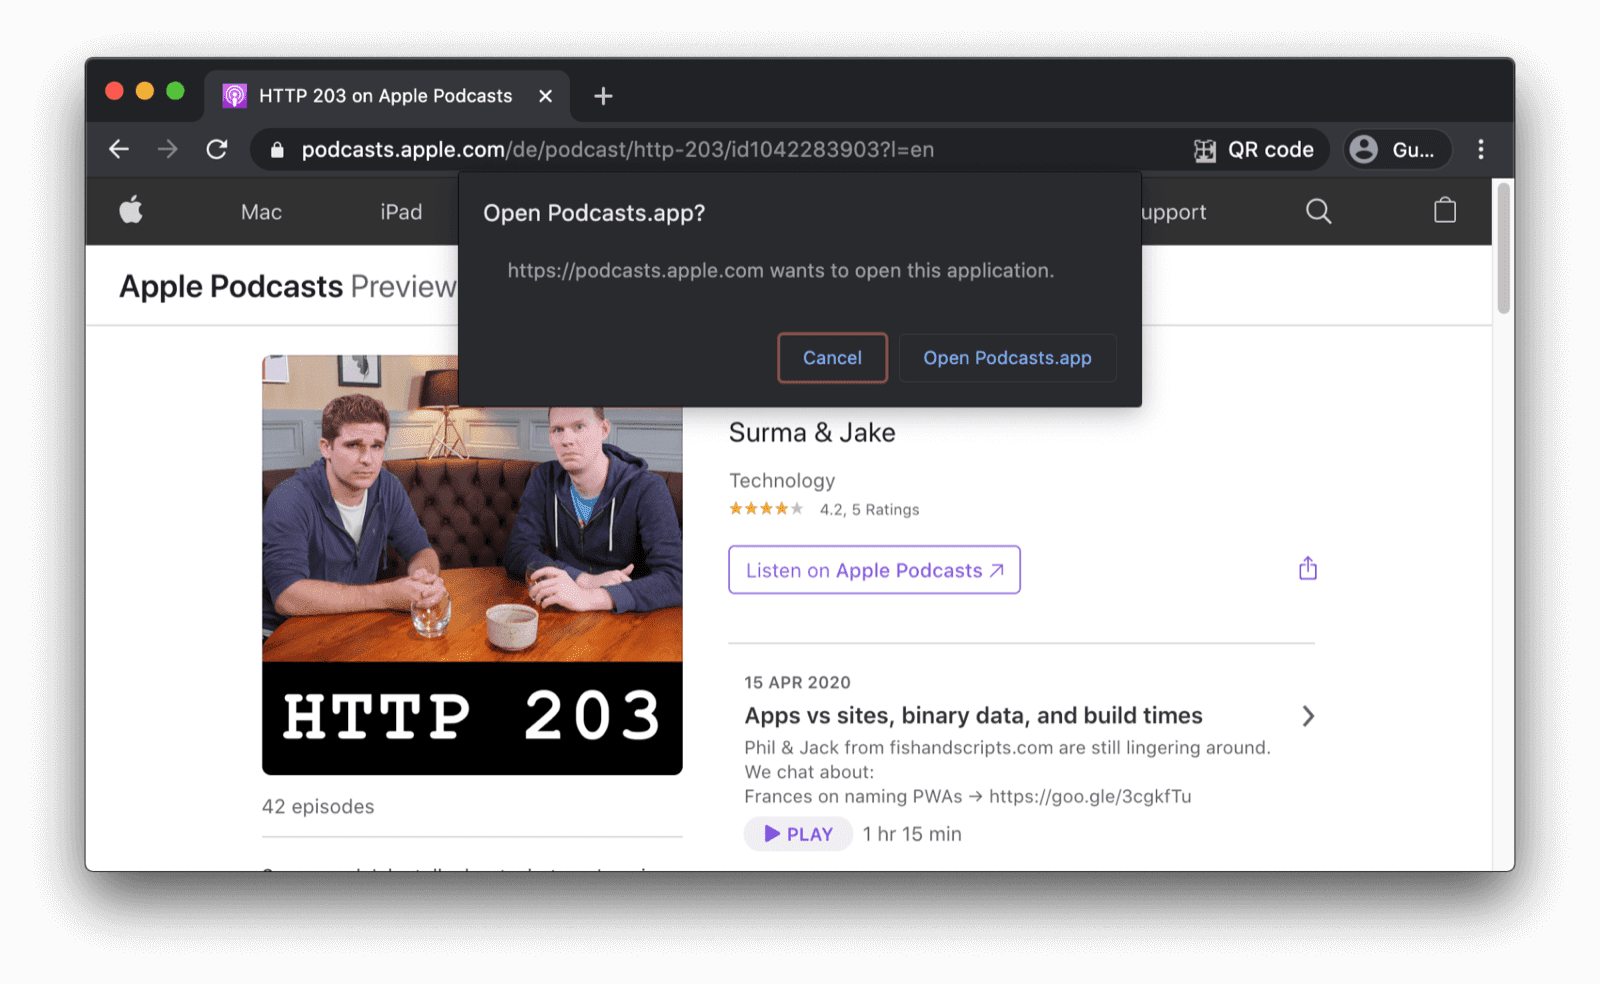 Chrome ब्राउज़र में, पुष्टि करने वाला डायलॉग दिखाया जा रहा है. इसमें, उपयोगकर्ता से पूछा जाएगा कि उन्हें Podcasts ऐप्लिकेशन खोलना है या नहीं.